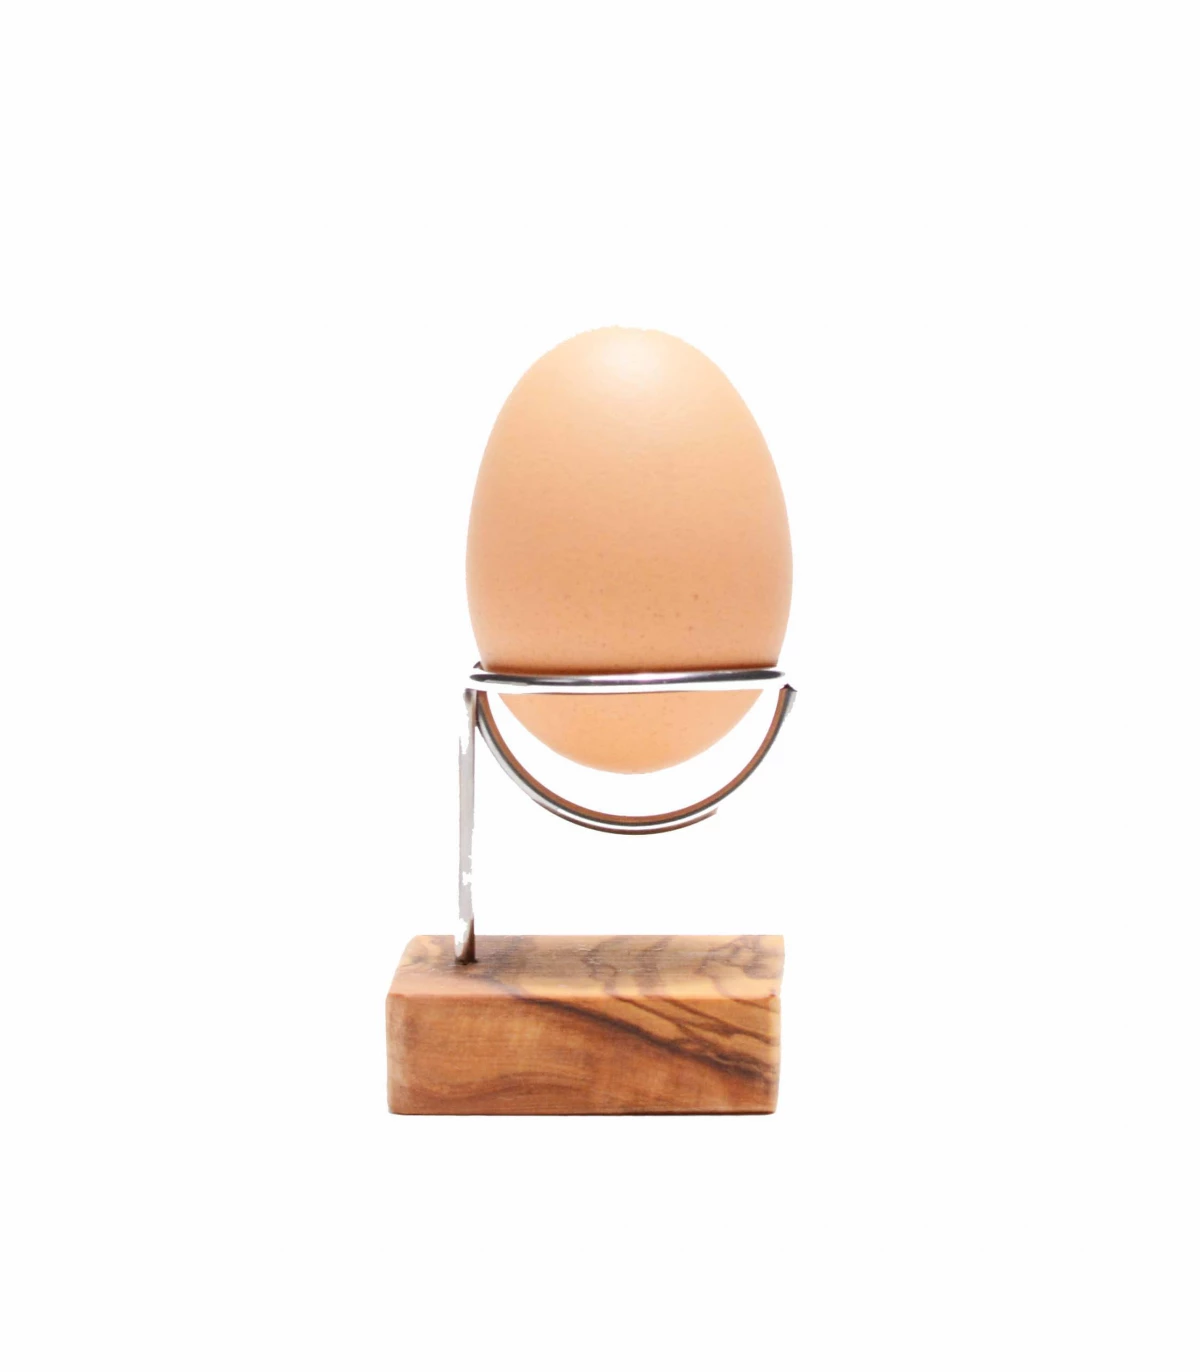 https://takaterra.com/3357-superlarge_default/olive-wood-egg-holder-olivenholz.webp